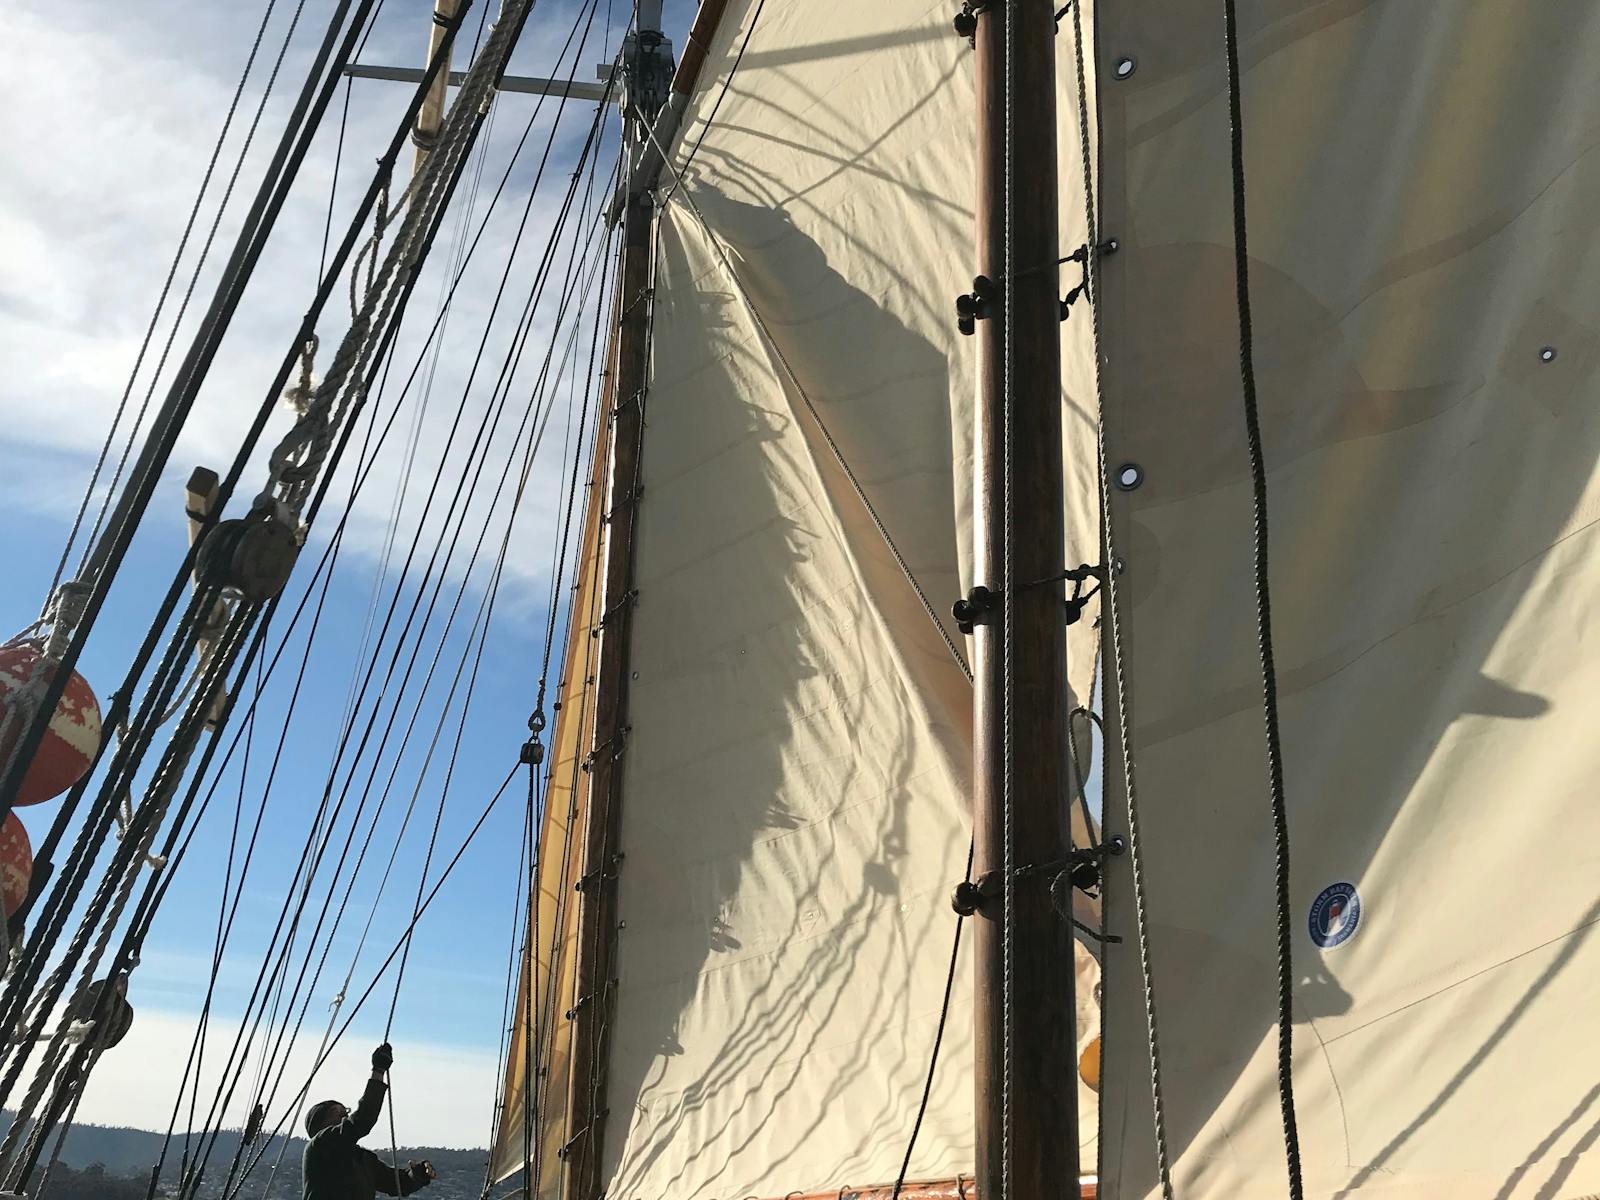 New sails on SV Rhona H